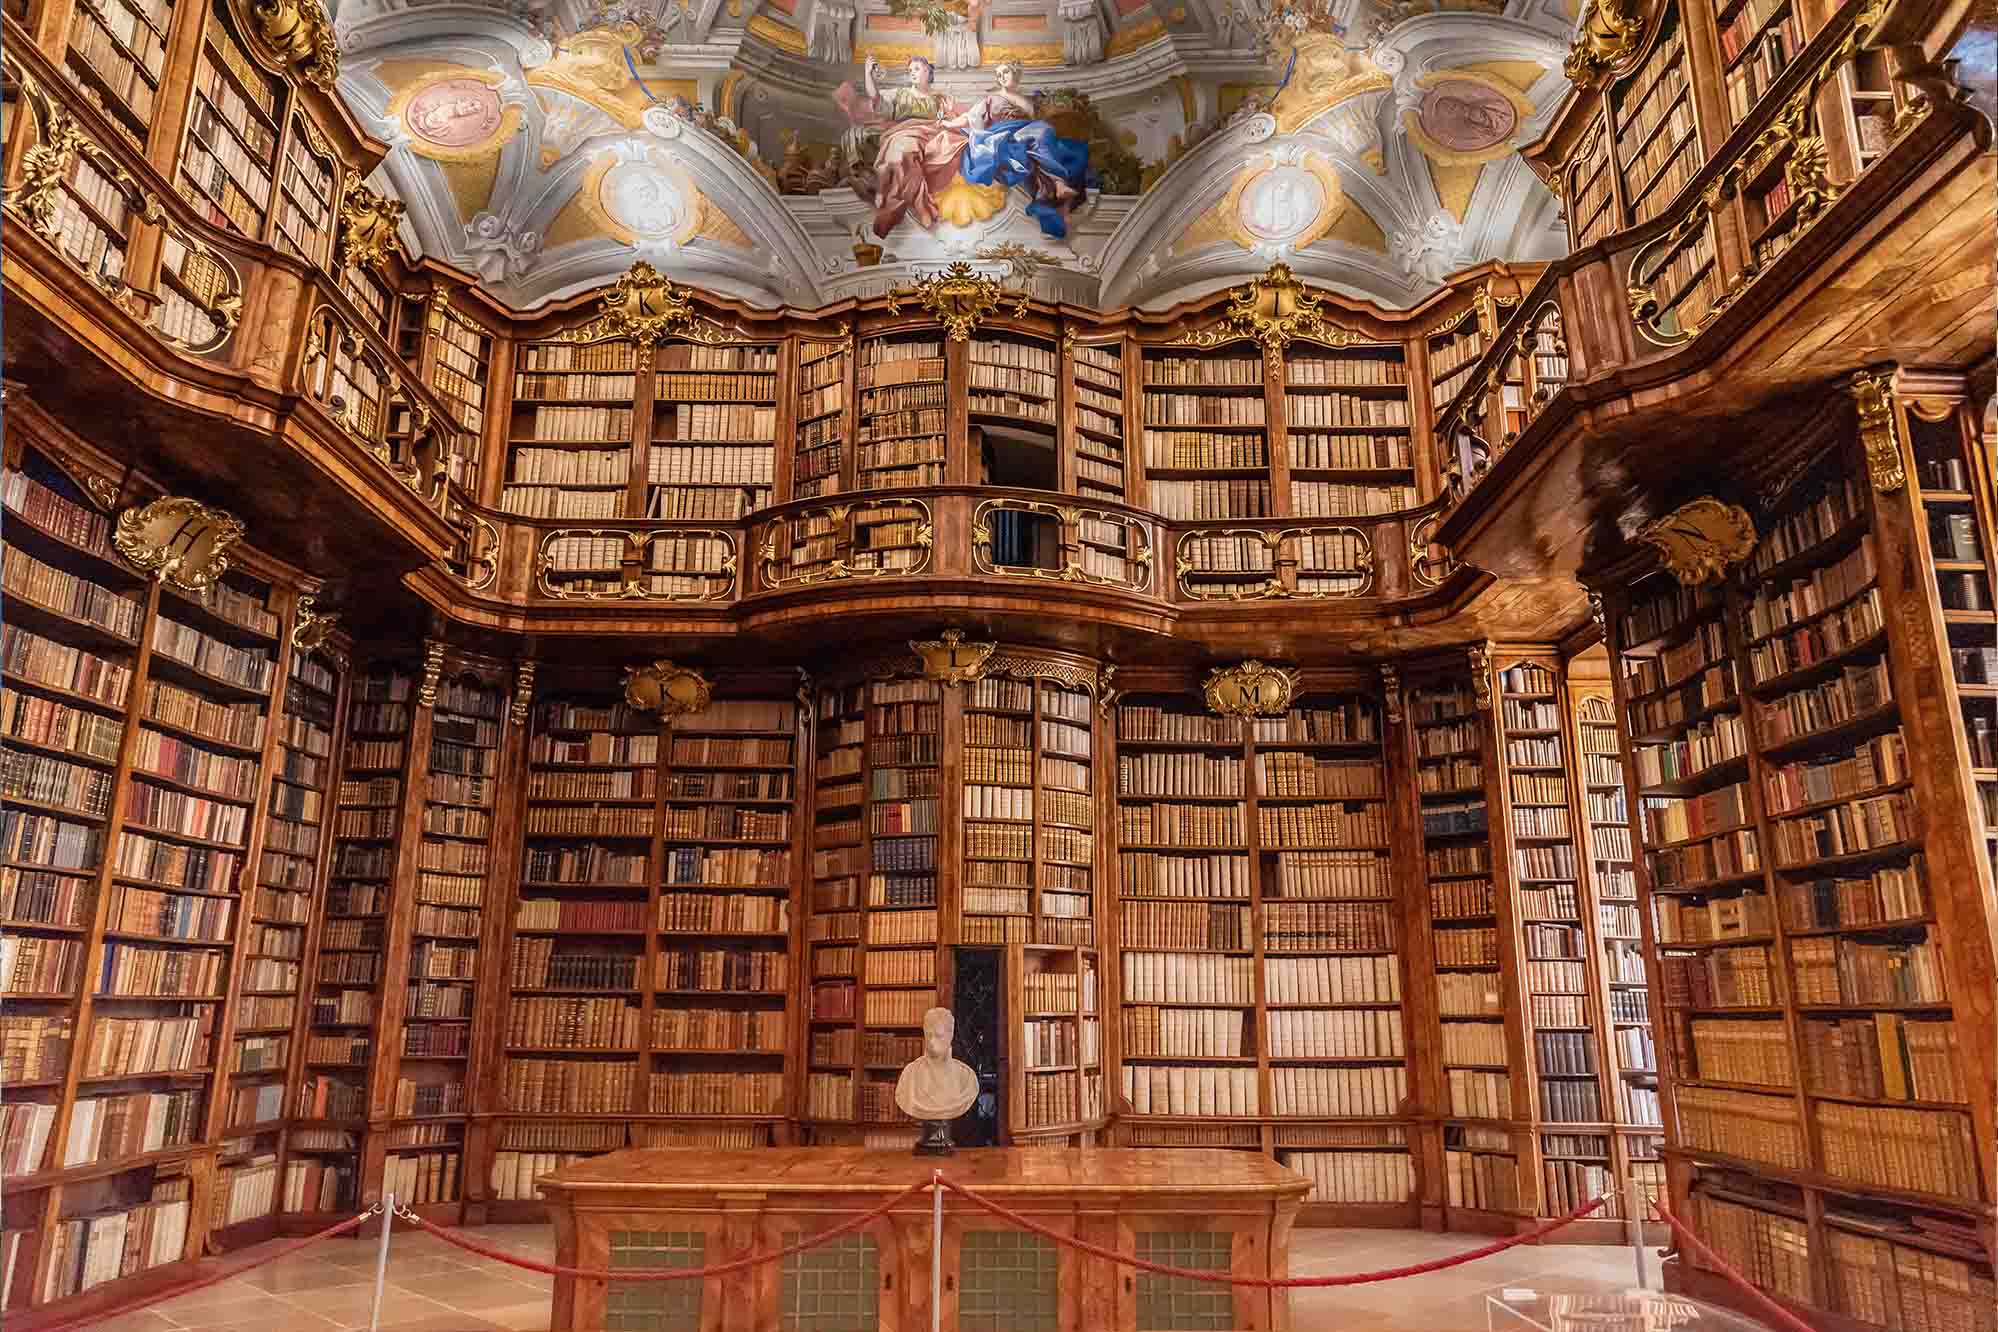 Bên trong Thư viện Thánh Florian. (Ảnh: Redfox1980/Shutterstock)